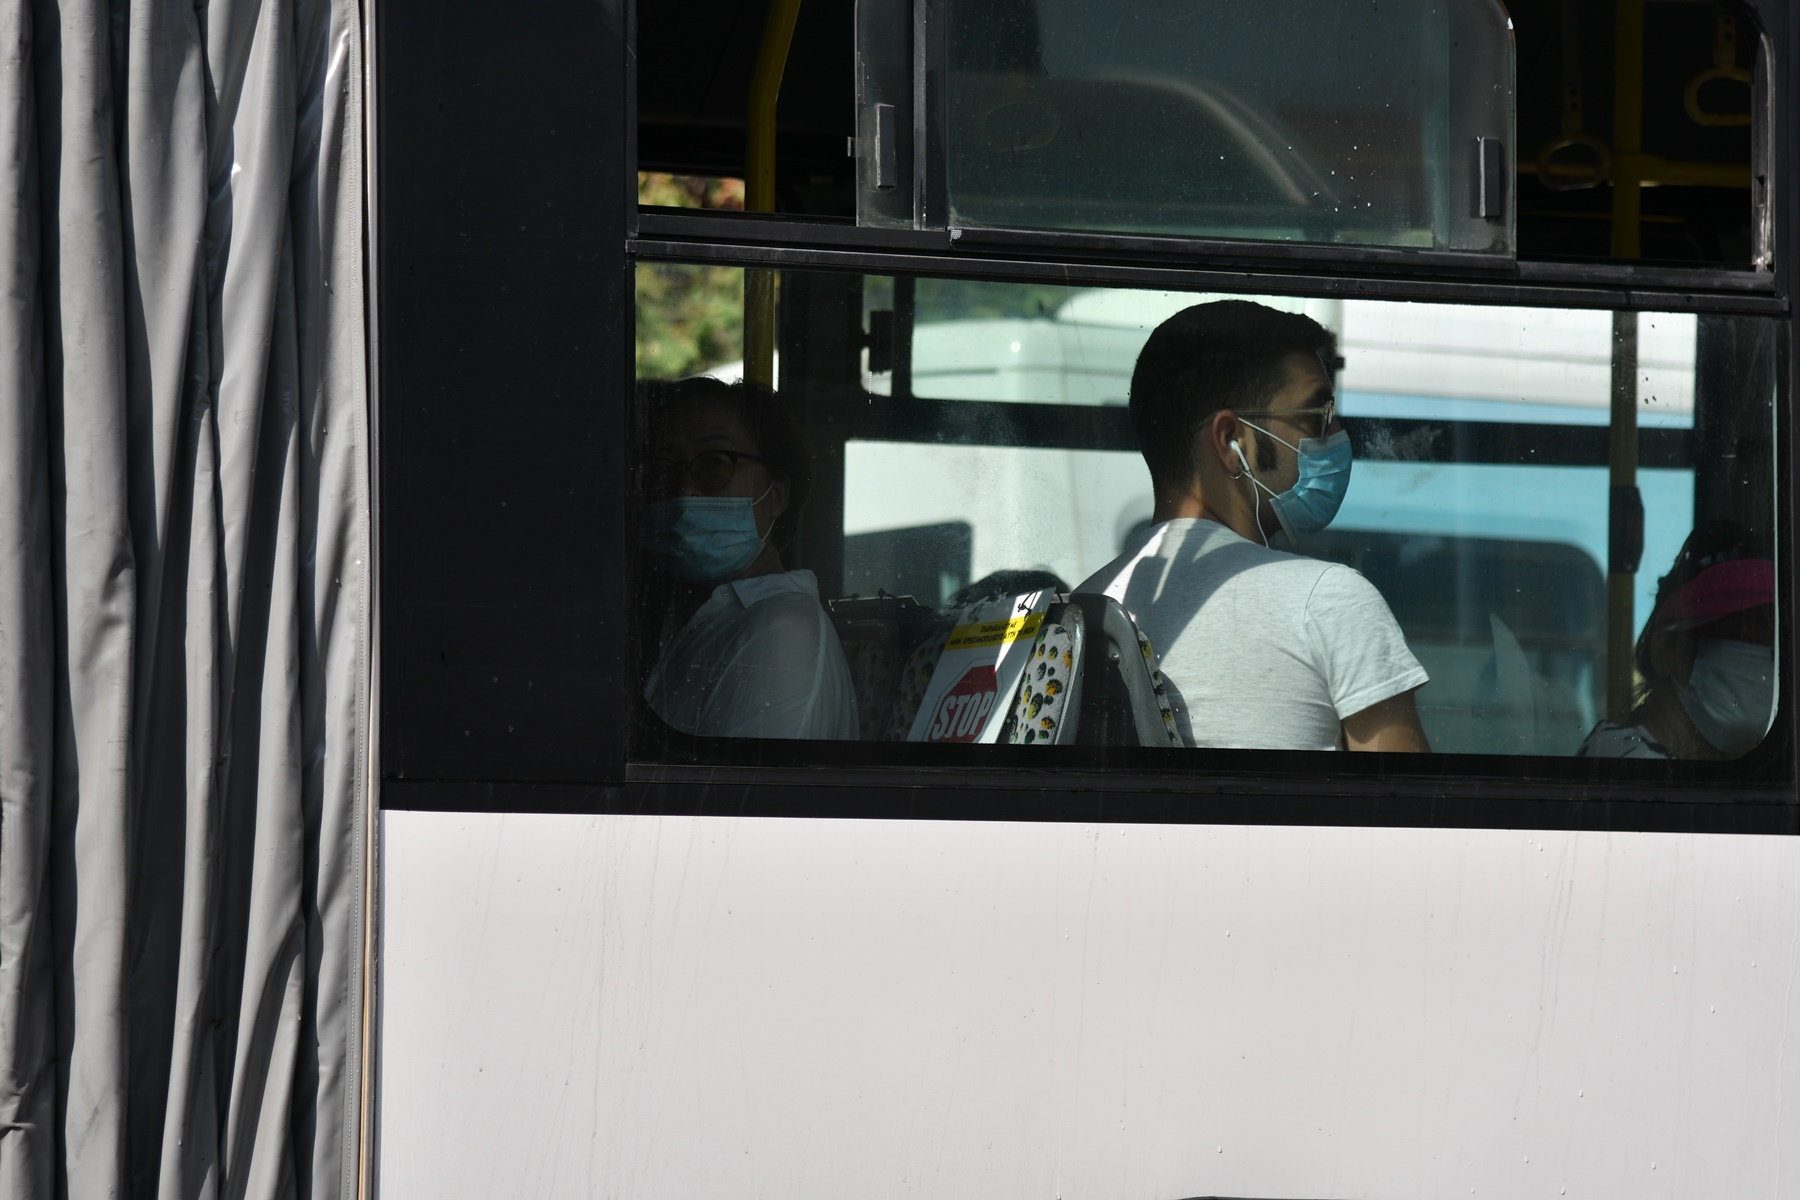 Οδηγός λεωφορείου – αλλοδαπός: Η απάντηση για την “επίθεση” που προκάλεσε οργή